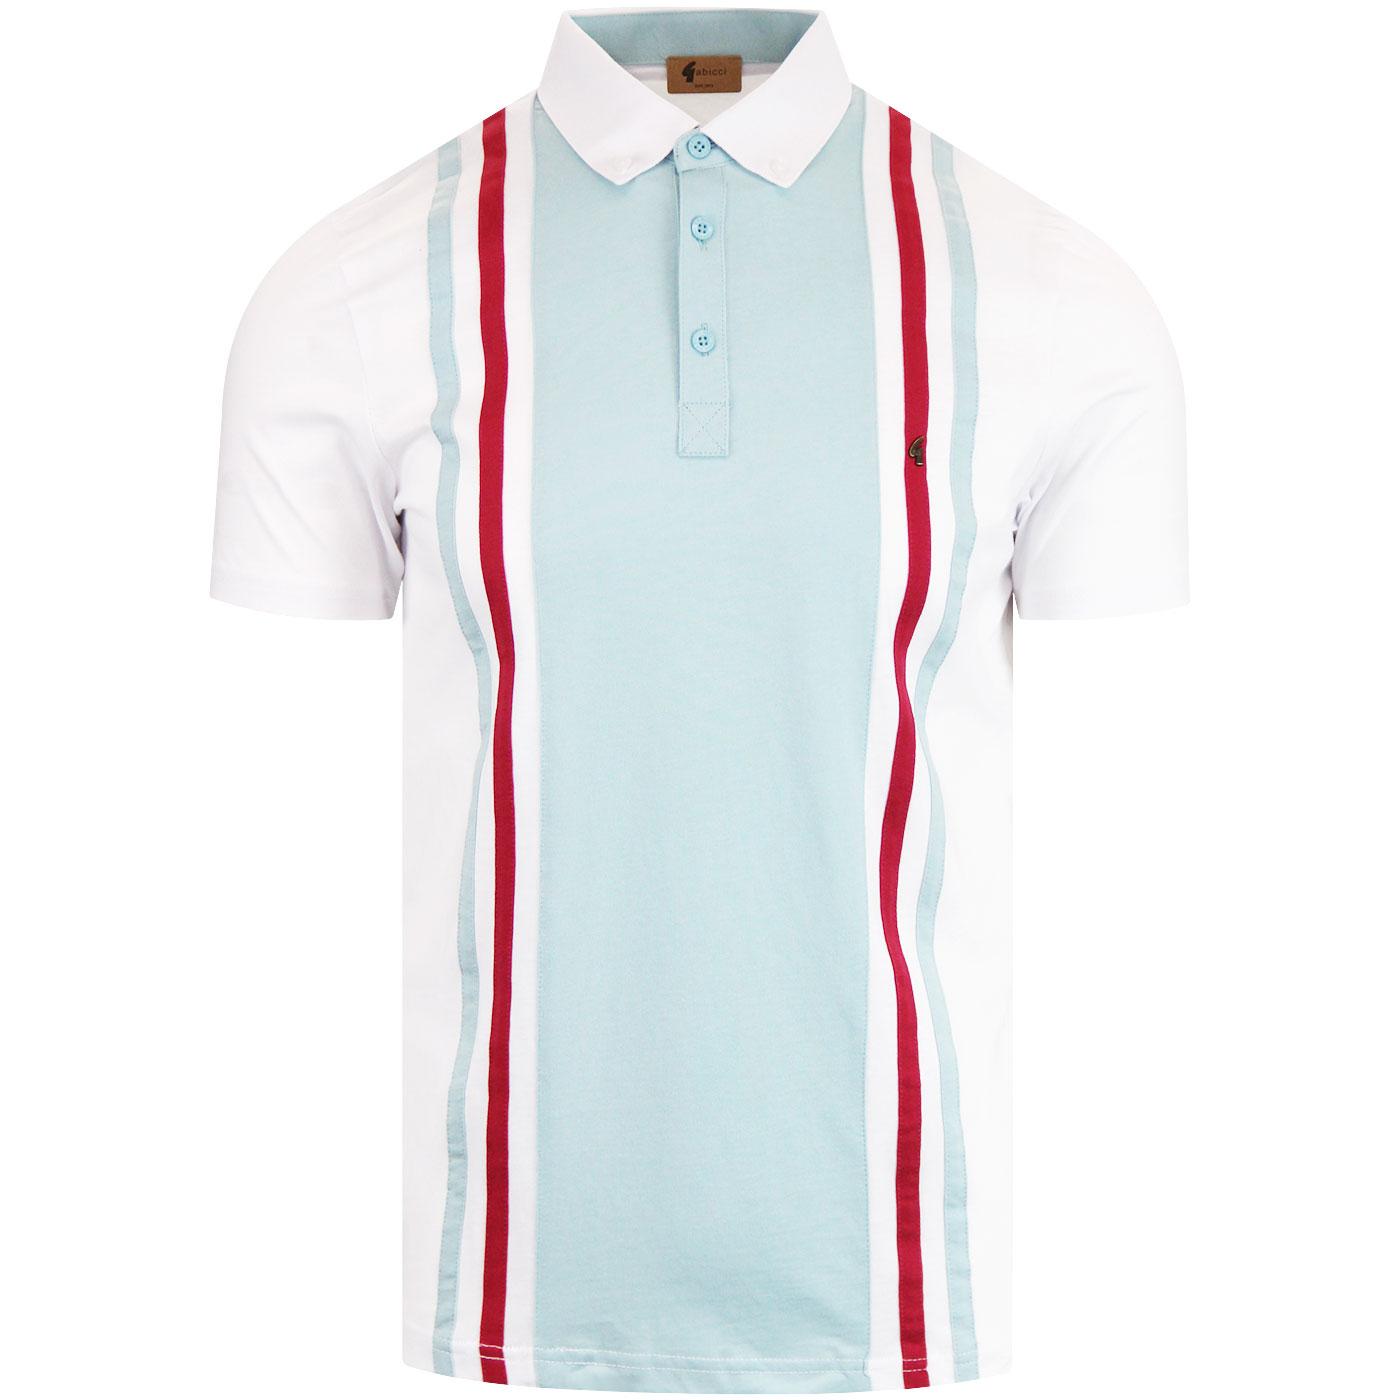 Briar GABICCI VINTAGE Mod Stripe Jersey Polo (W)